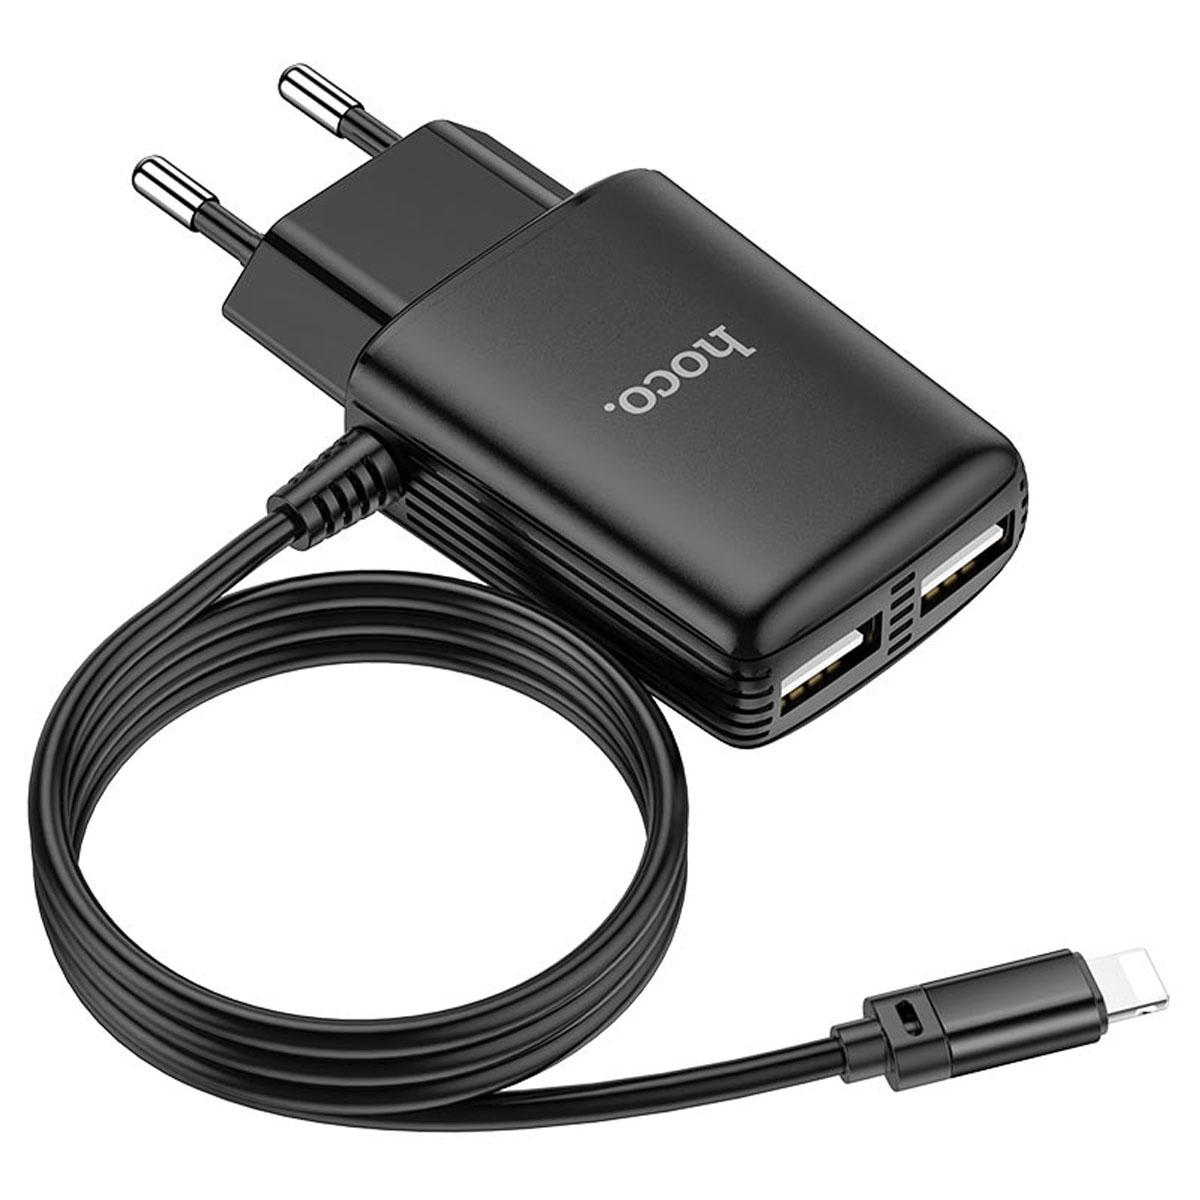 СЗУ (Сетевое зарядное устройство) HOCO C82A Real power со встроенным кабелем Lightning 8 pin, 2.4A, 2 USB, длина 1 метр, цвет черный